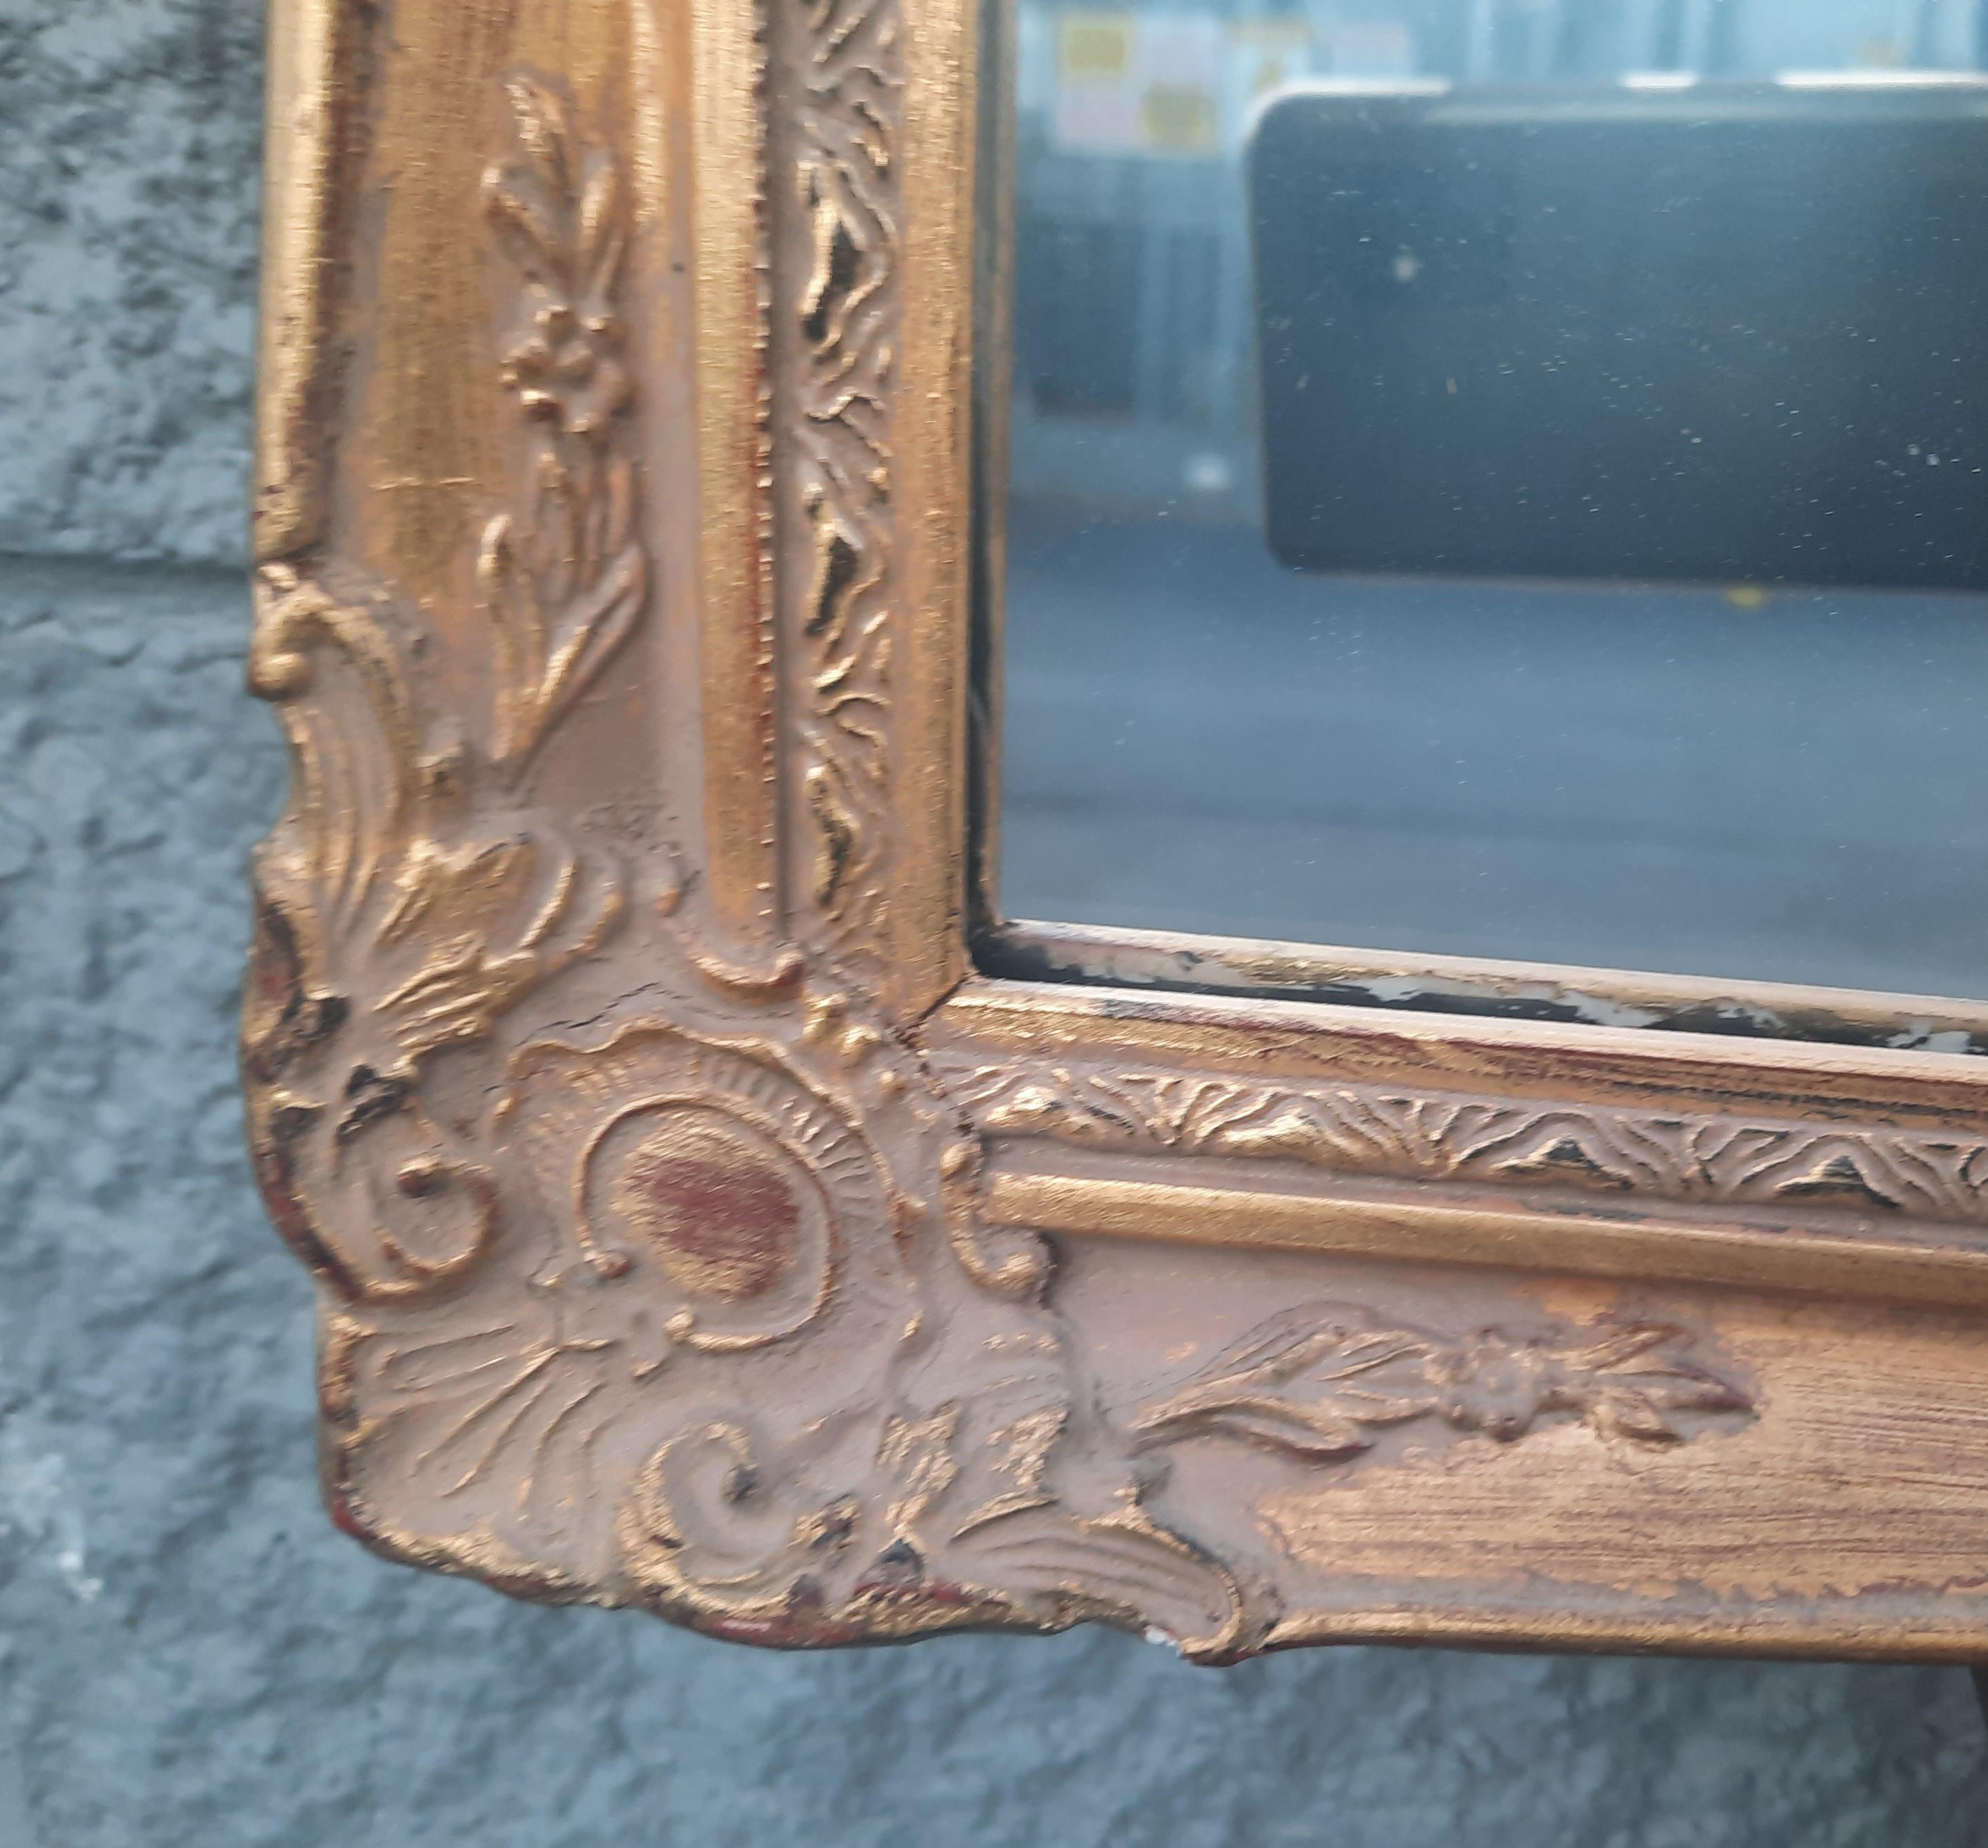 Miroir français ancien à cadre sculpté en bois doré.
Bon état vintage
Mesure 39.5 